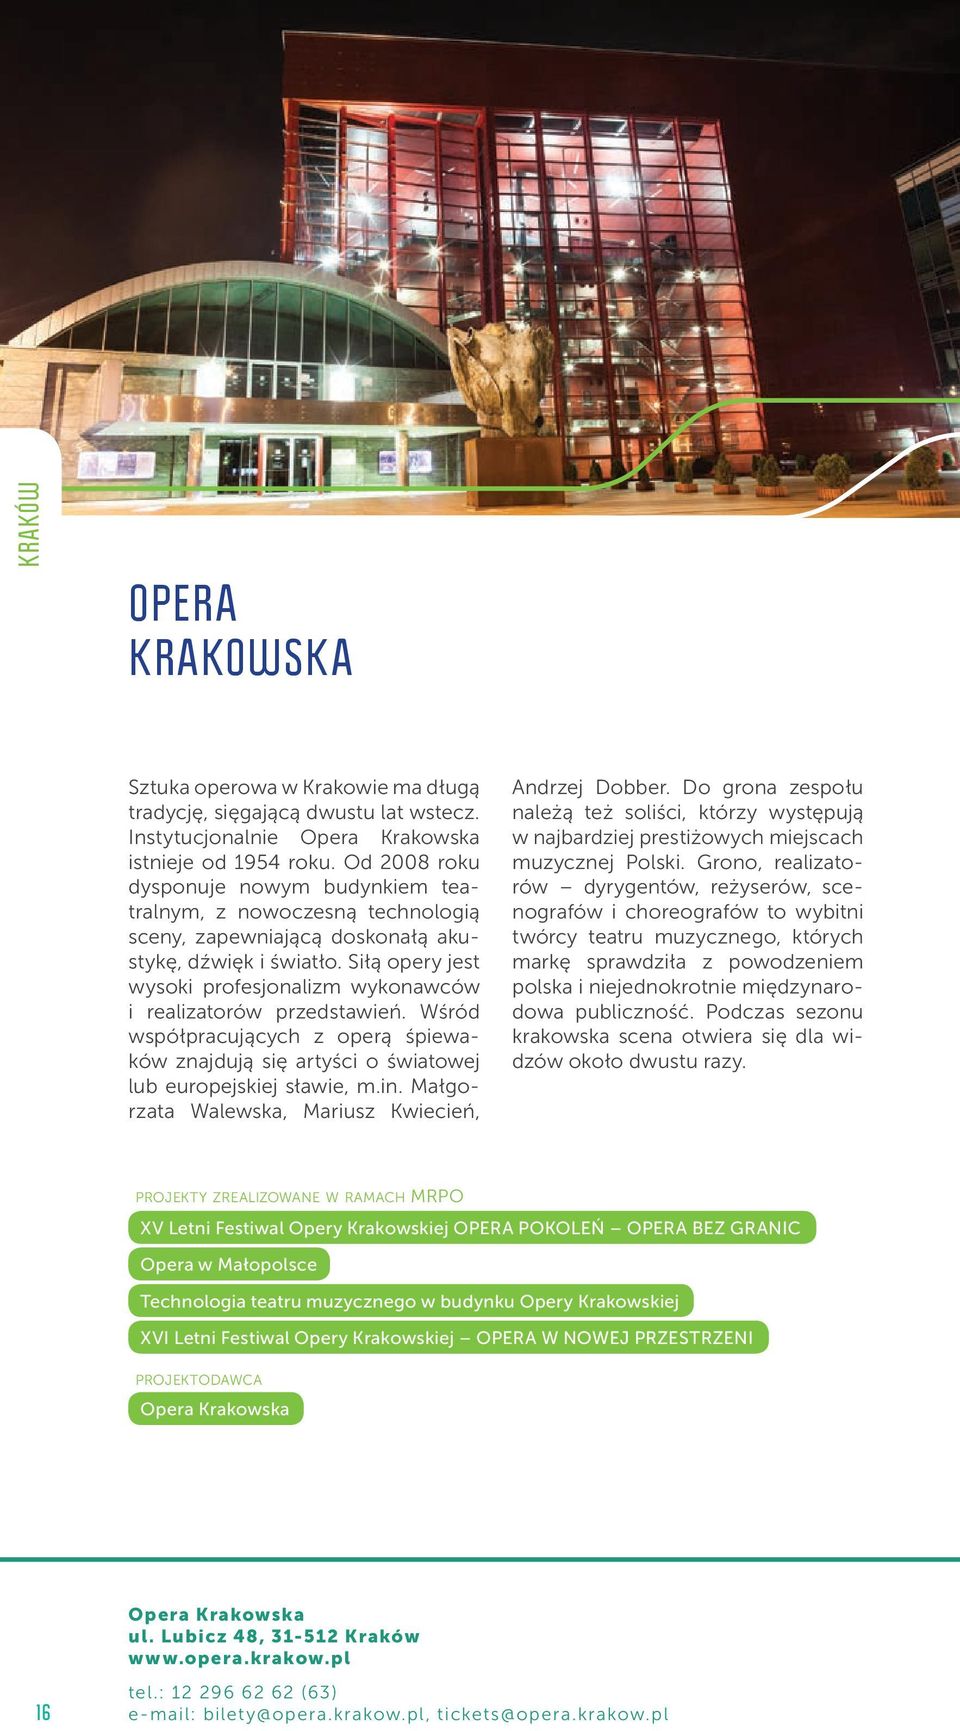 Siłą opery jest wysoki profesjonalizm wykonawców i realizatorów przedstawień. Wśród współpracujących z operą śpiewaków znajdują się artyści o światowej lub europejskiej sławie, m.in.